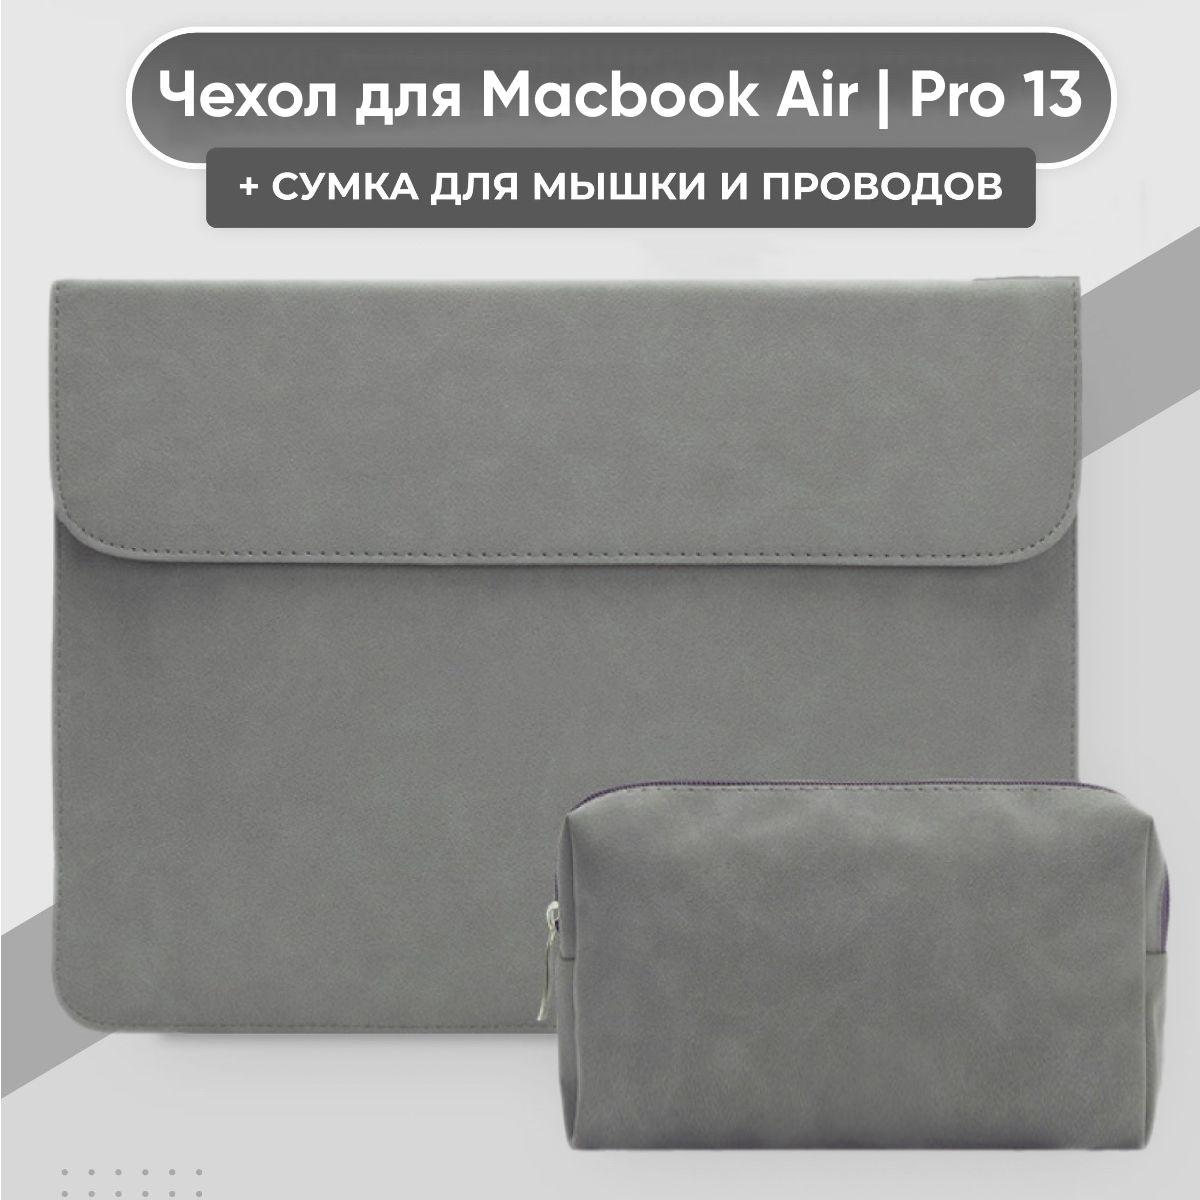 Чехол для Macbook Air 13 / Pro 13 и сумка для зарядки и мышки, эко-замша